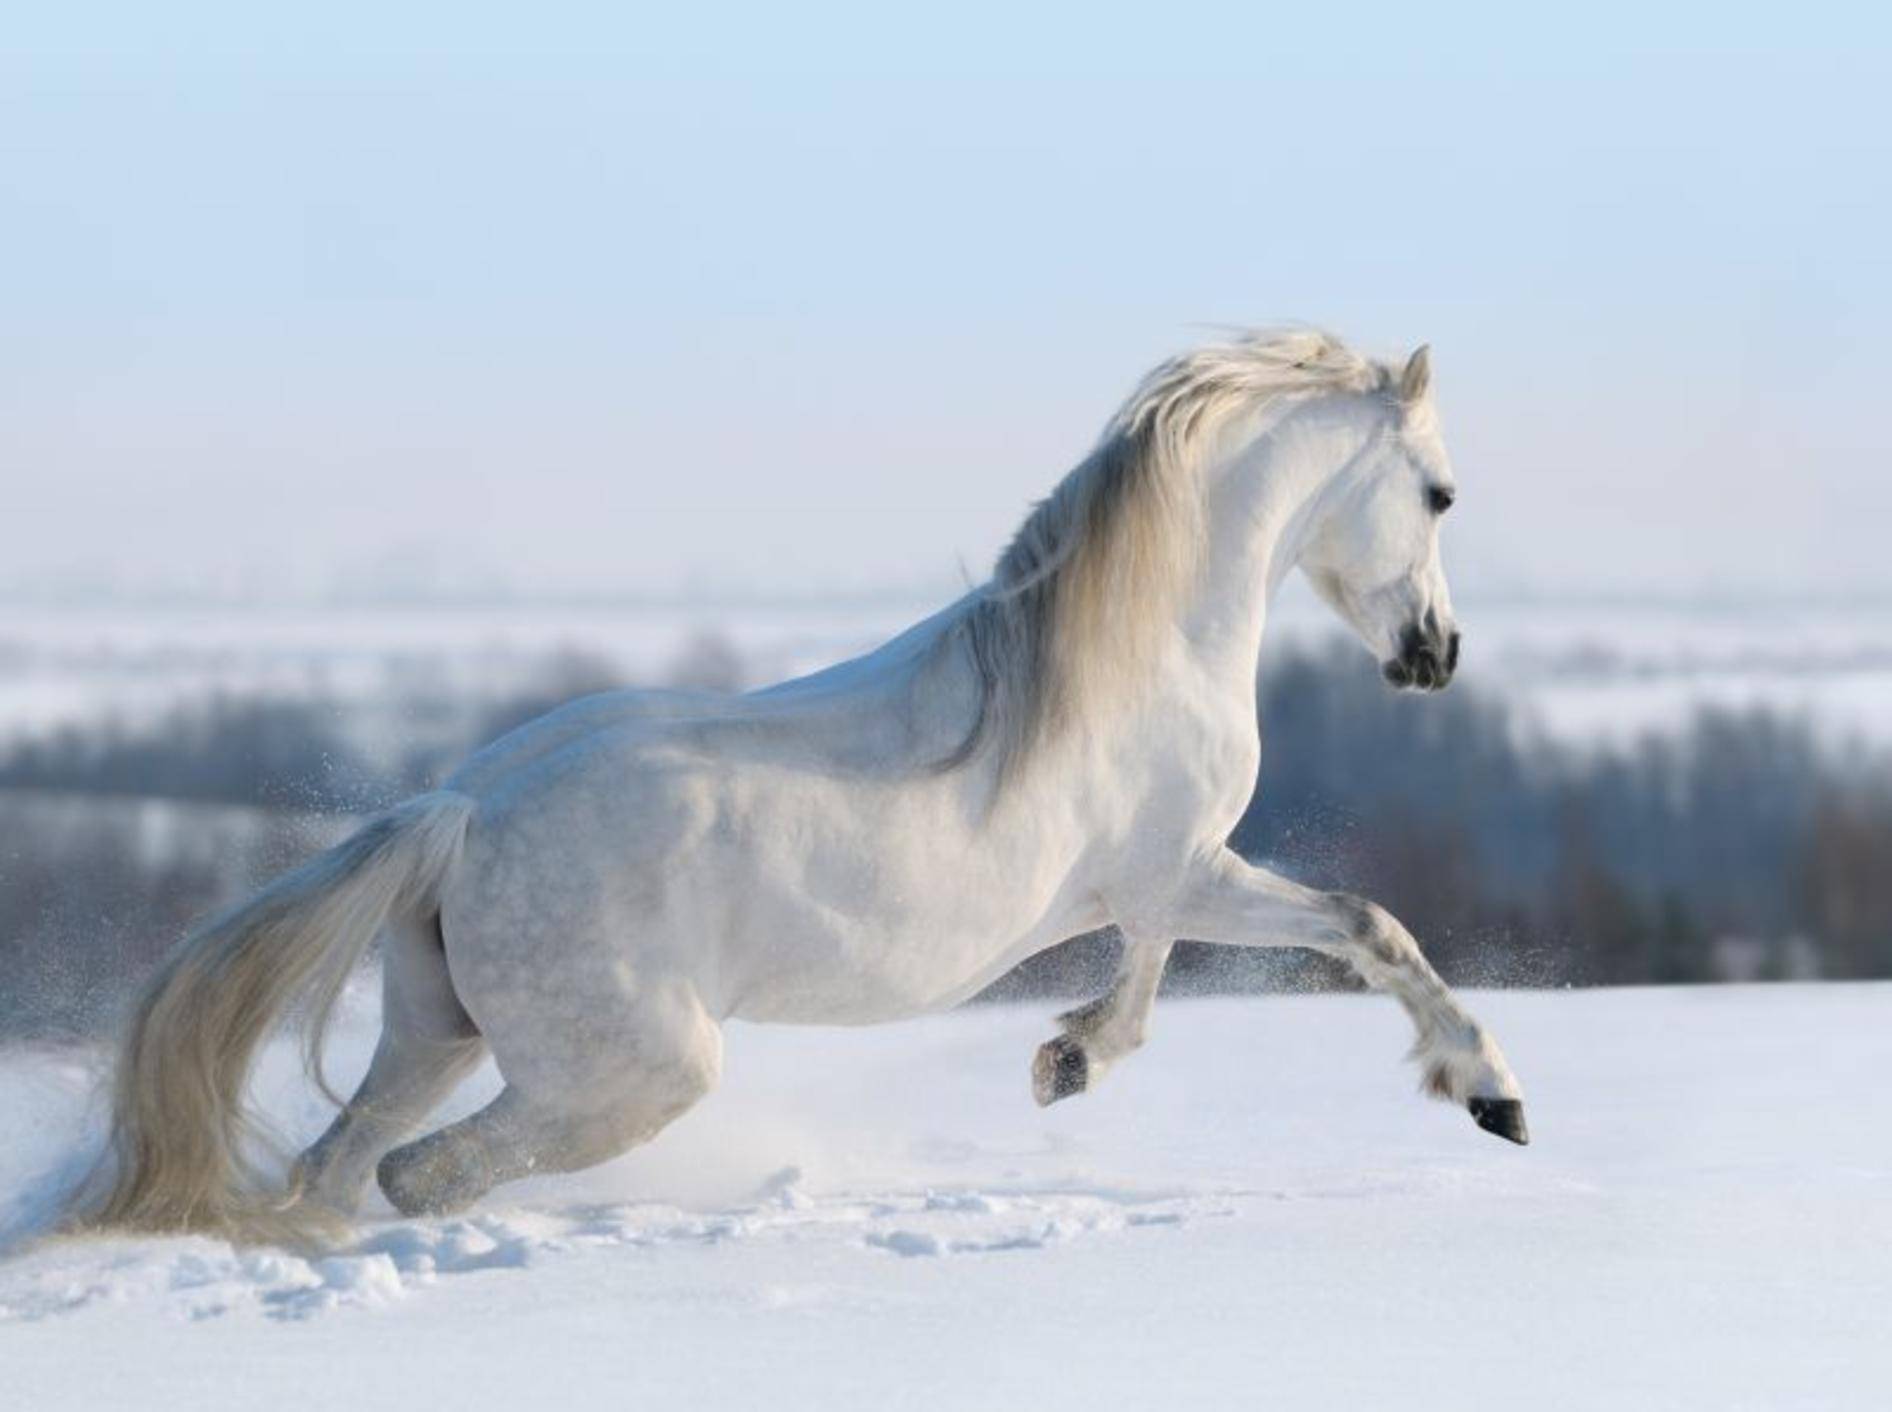 Für Pferde ist so eine frische Schneedecke im Winter wunderbar, um sich auszutoben – Bild: Shutterstock / Abramova Kseniya